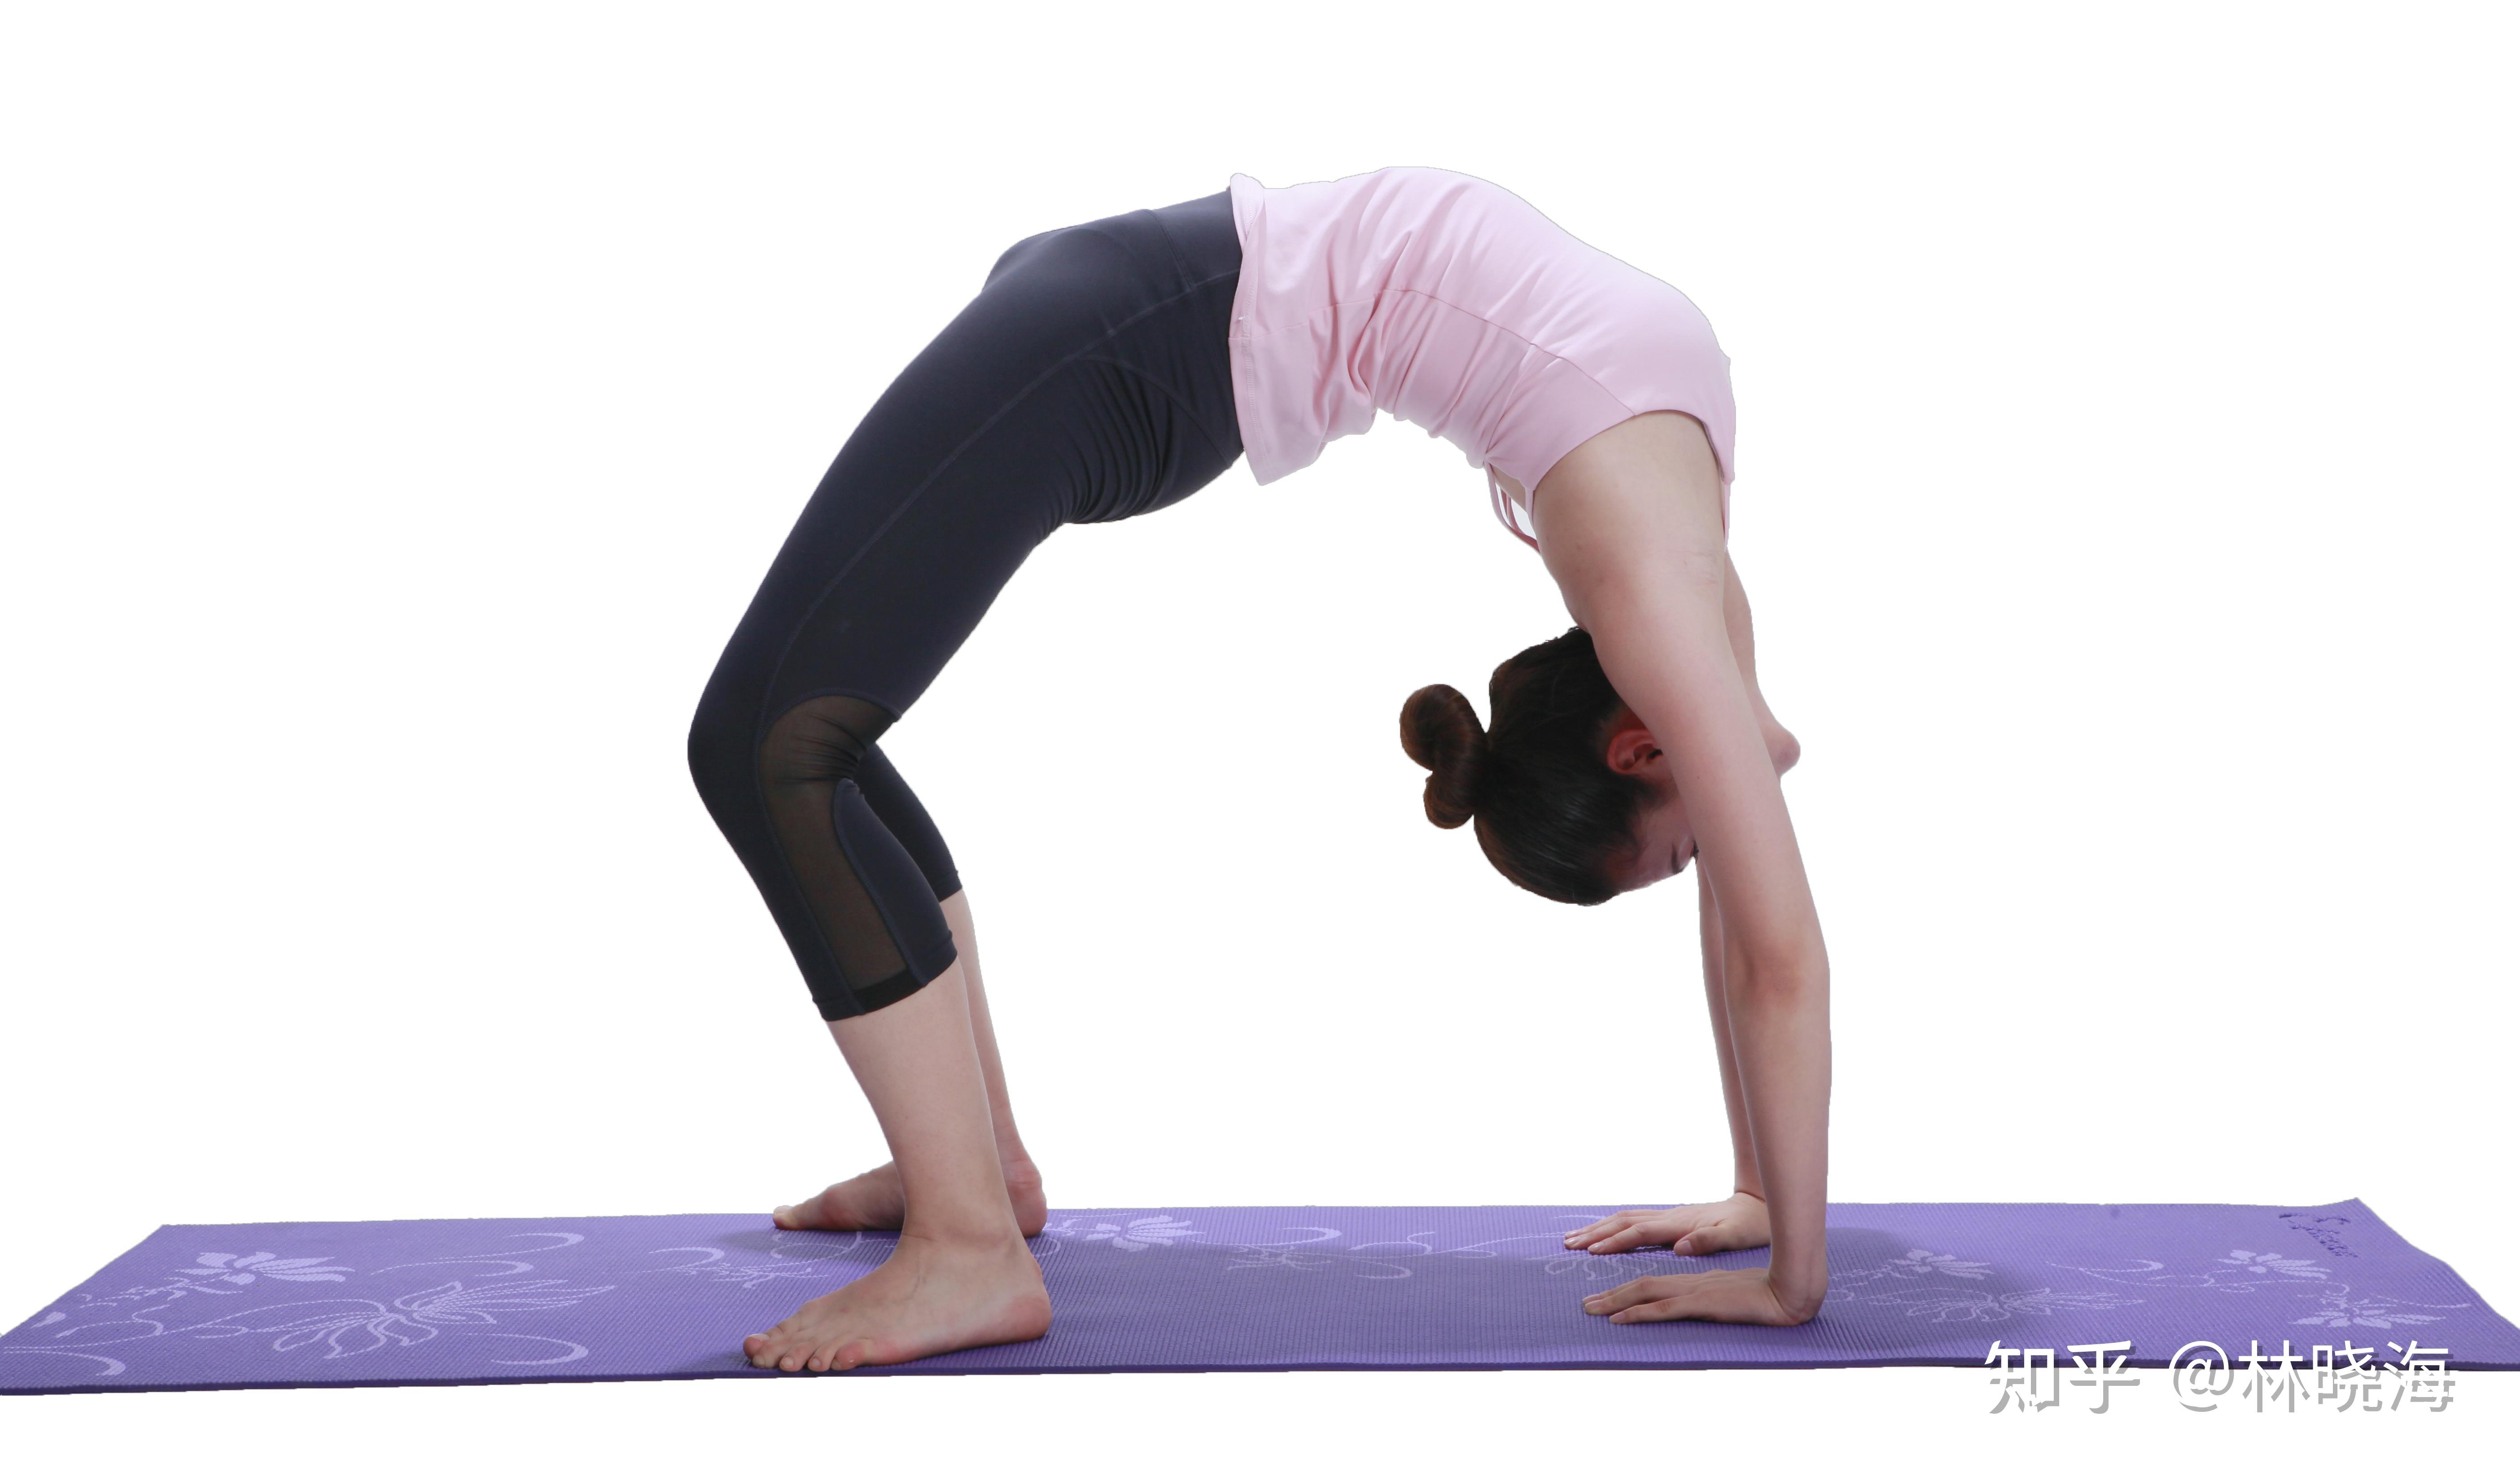 增强背部和手臂的力量;● 可以收紧大腿和臀部的肌肉功效通常在瑜伽中